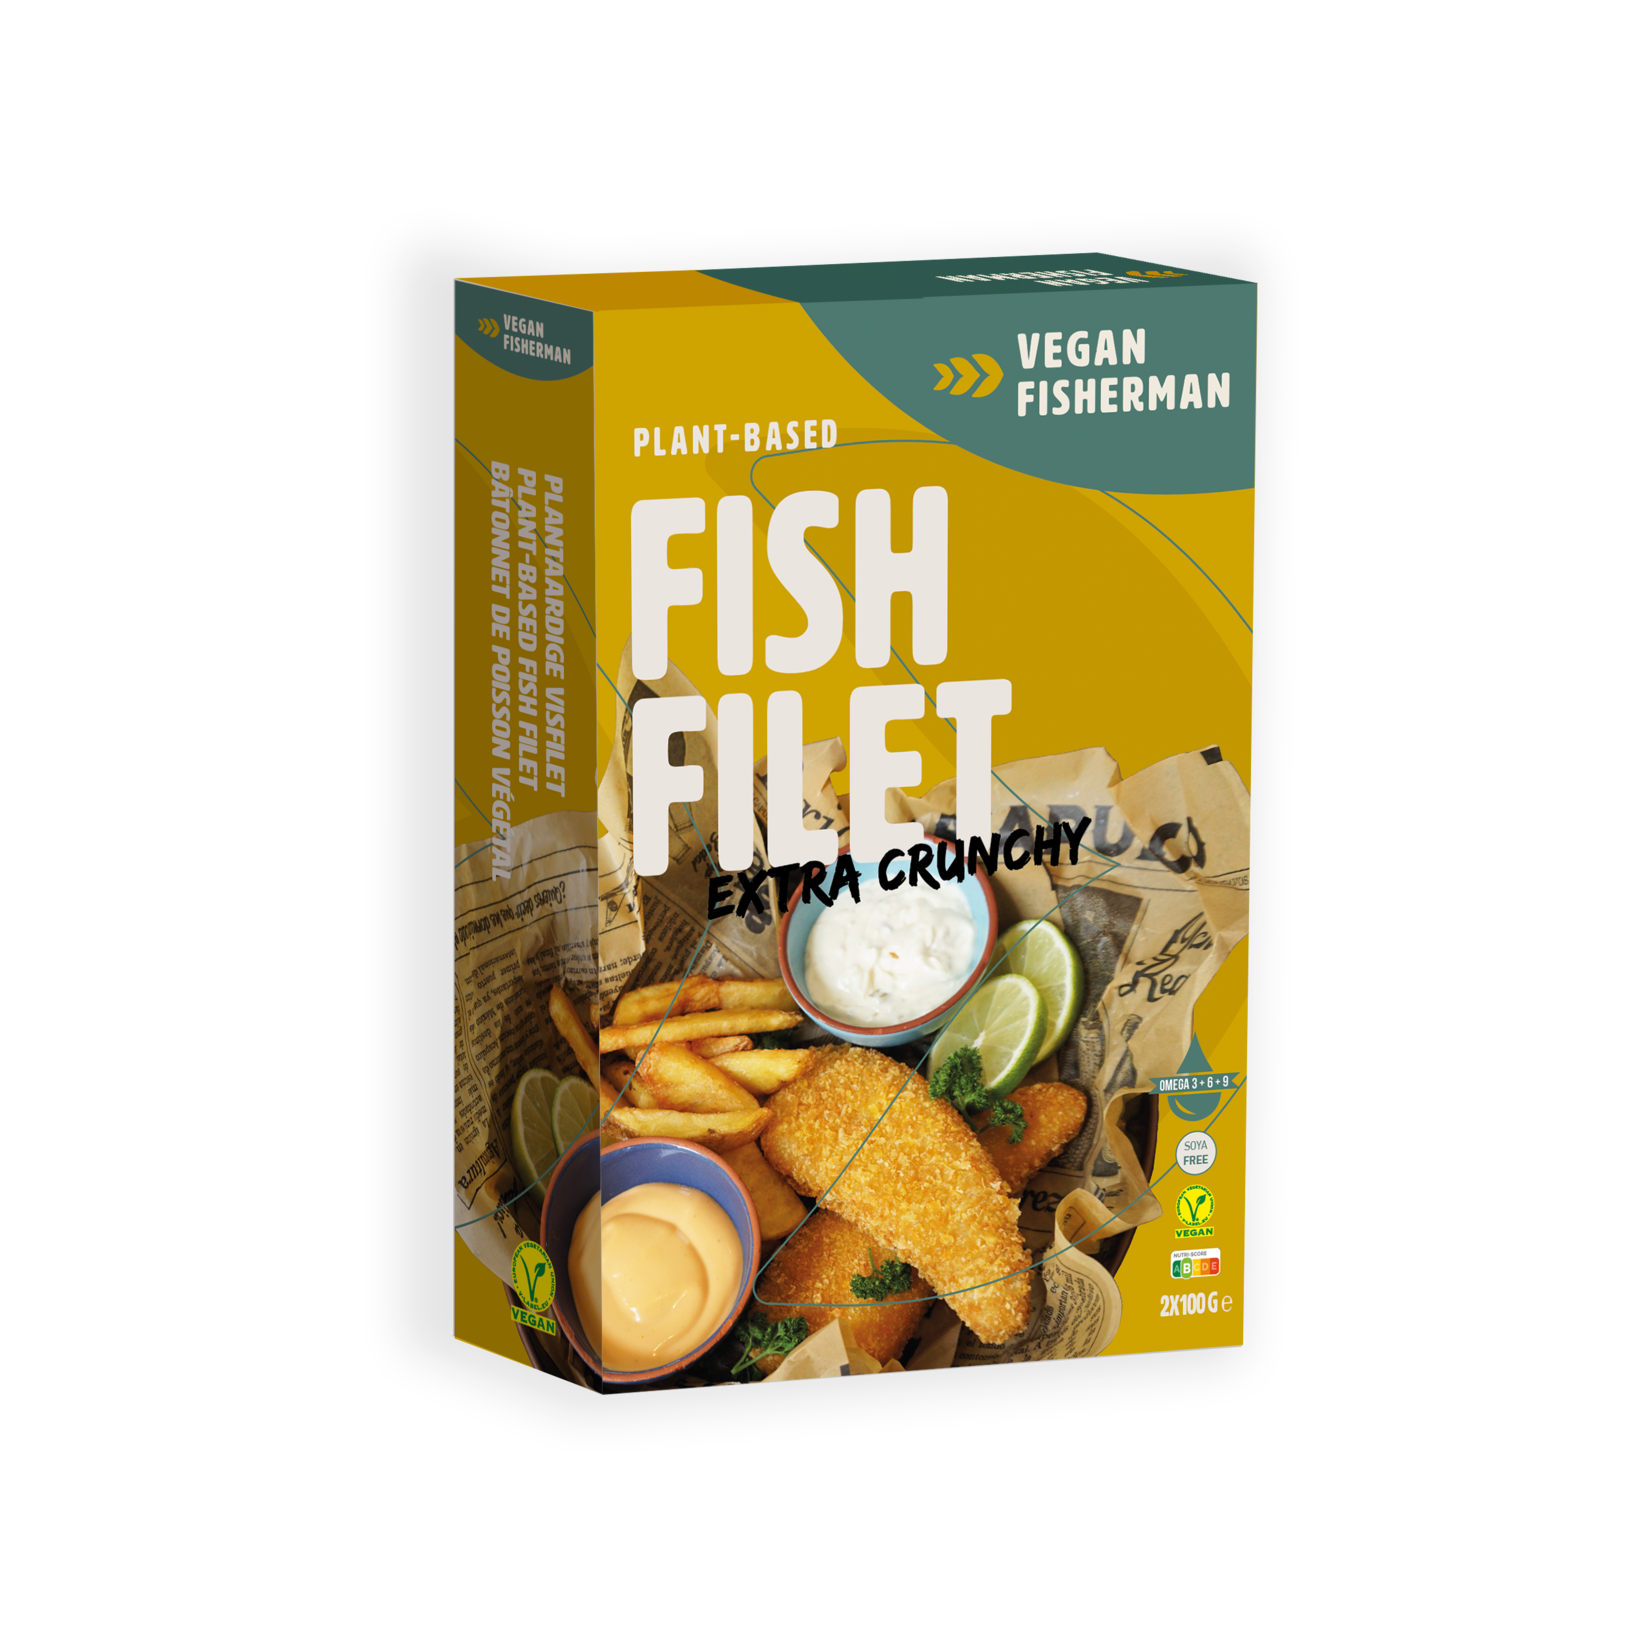 Vegan Visboer - Vegan Fisherman Vegan Fisherman Fish Filet | The ultimate plant-based fish substitute | Fish-friendly and healthy